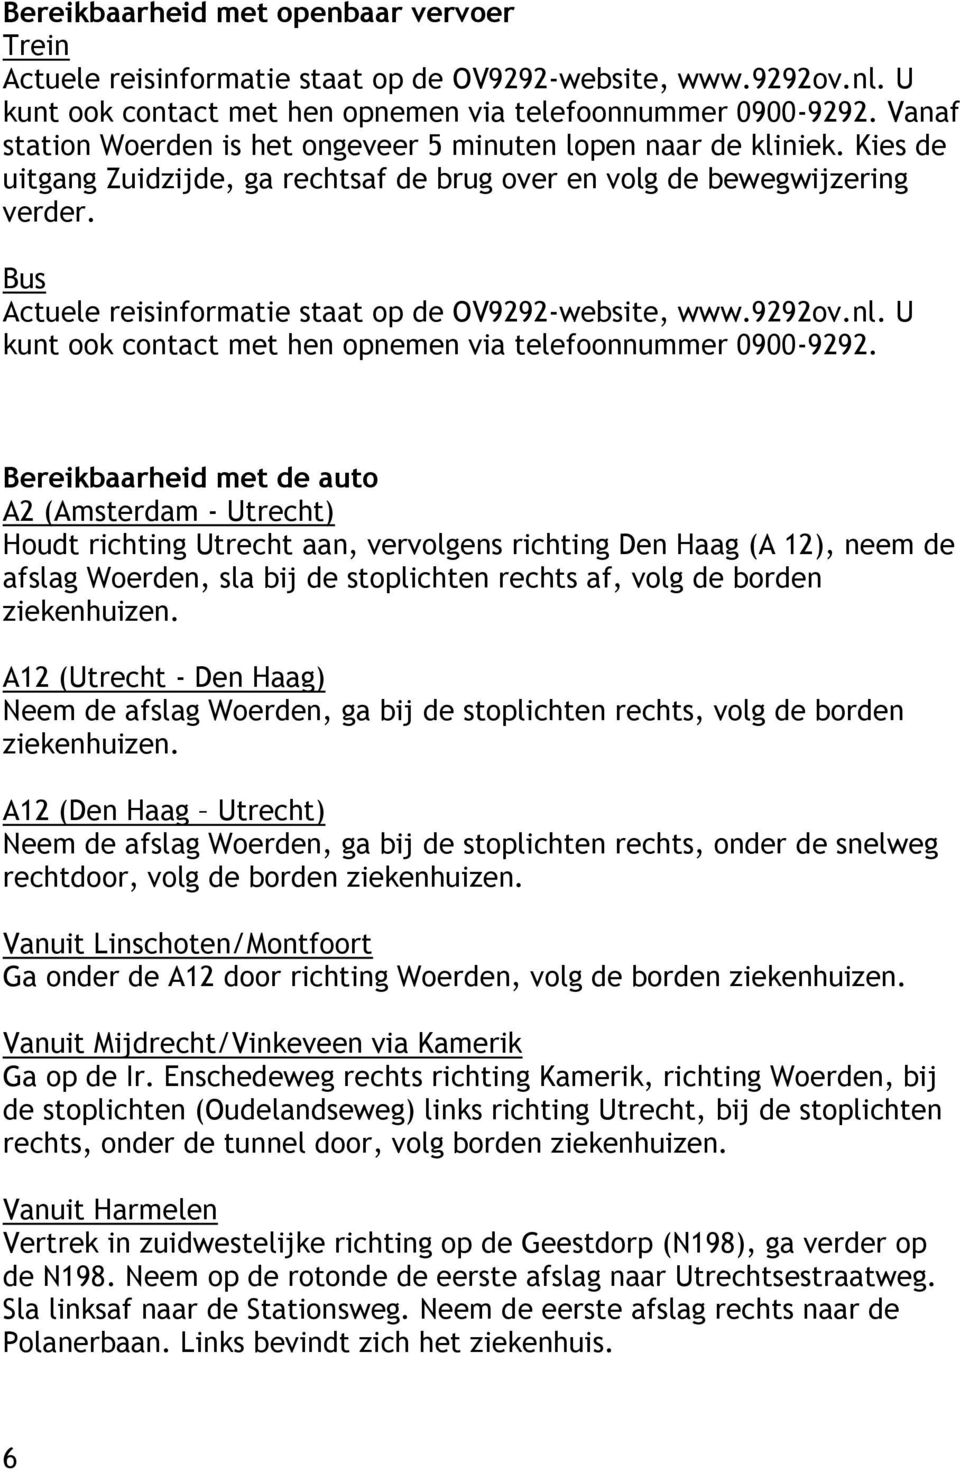 Bus Actuele reisinformatie staat op de OV9292-website, www.9292ov.nl. U kunt ook contact met hen opnemen via telefoonnummer 0900-9292.